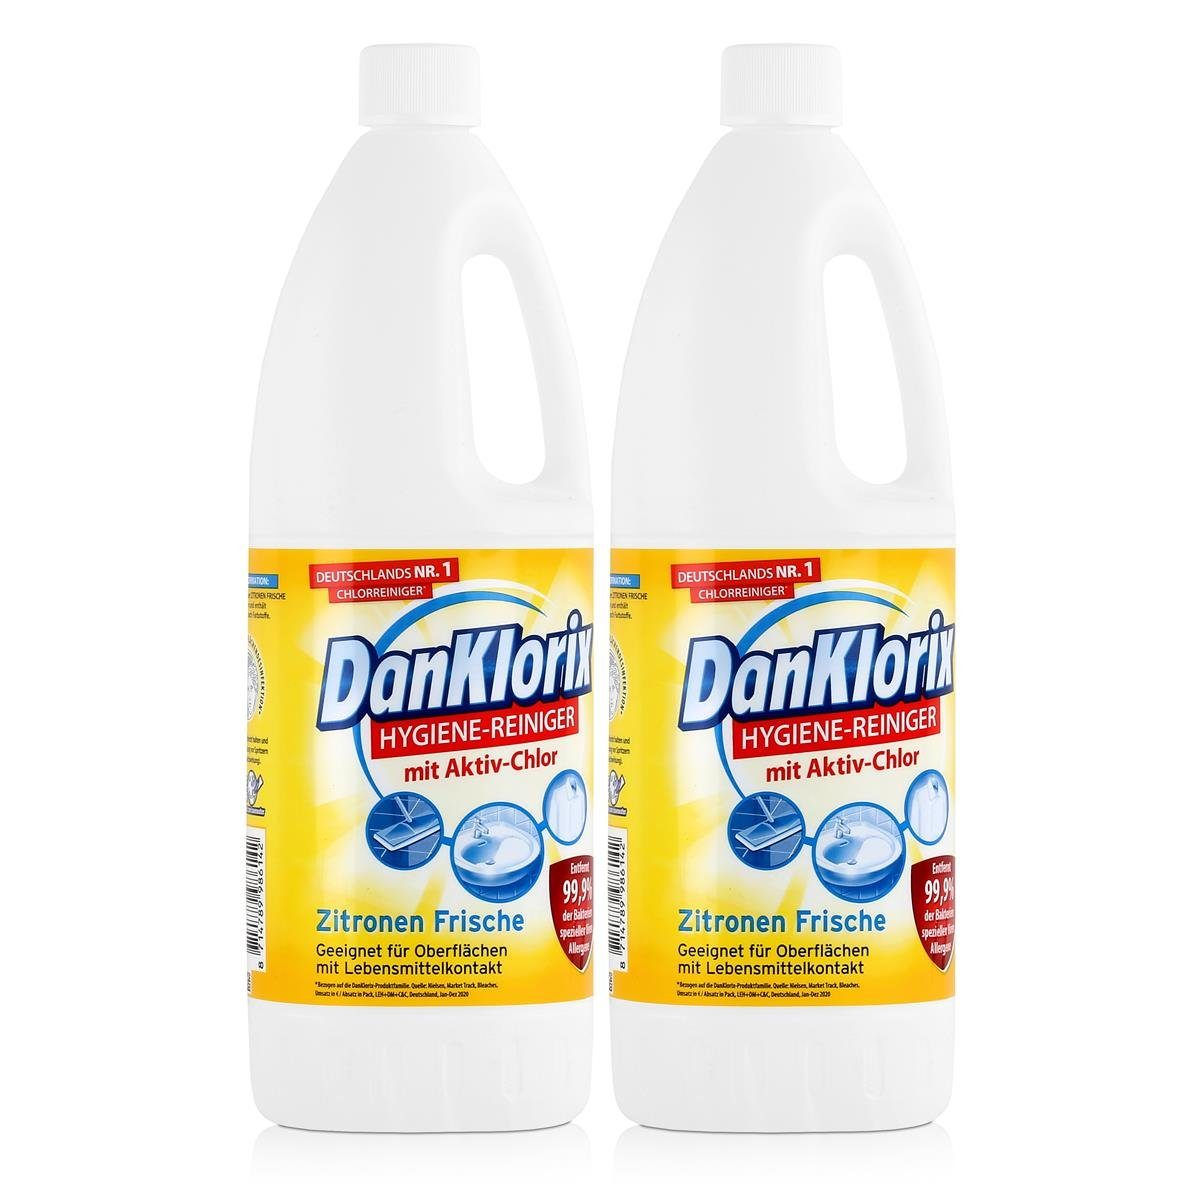 - Frische Zitronen Mit DanKlorix 1,5L Hygiene-Reiniger (2e Aktiv-Chlor DanKlorix WC-Reiniger